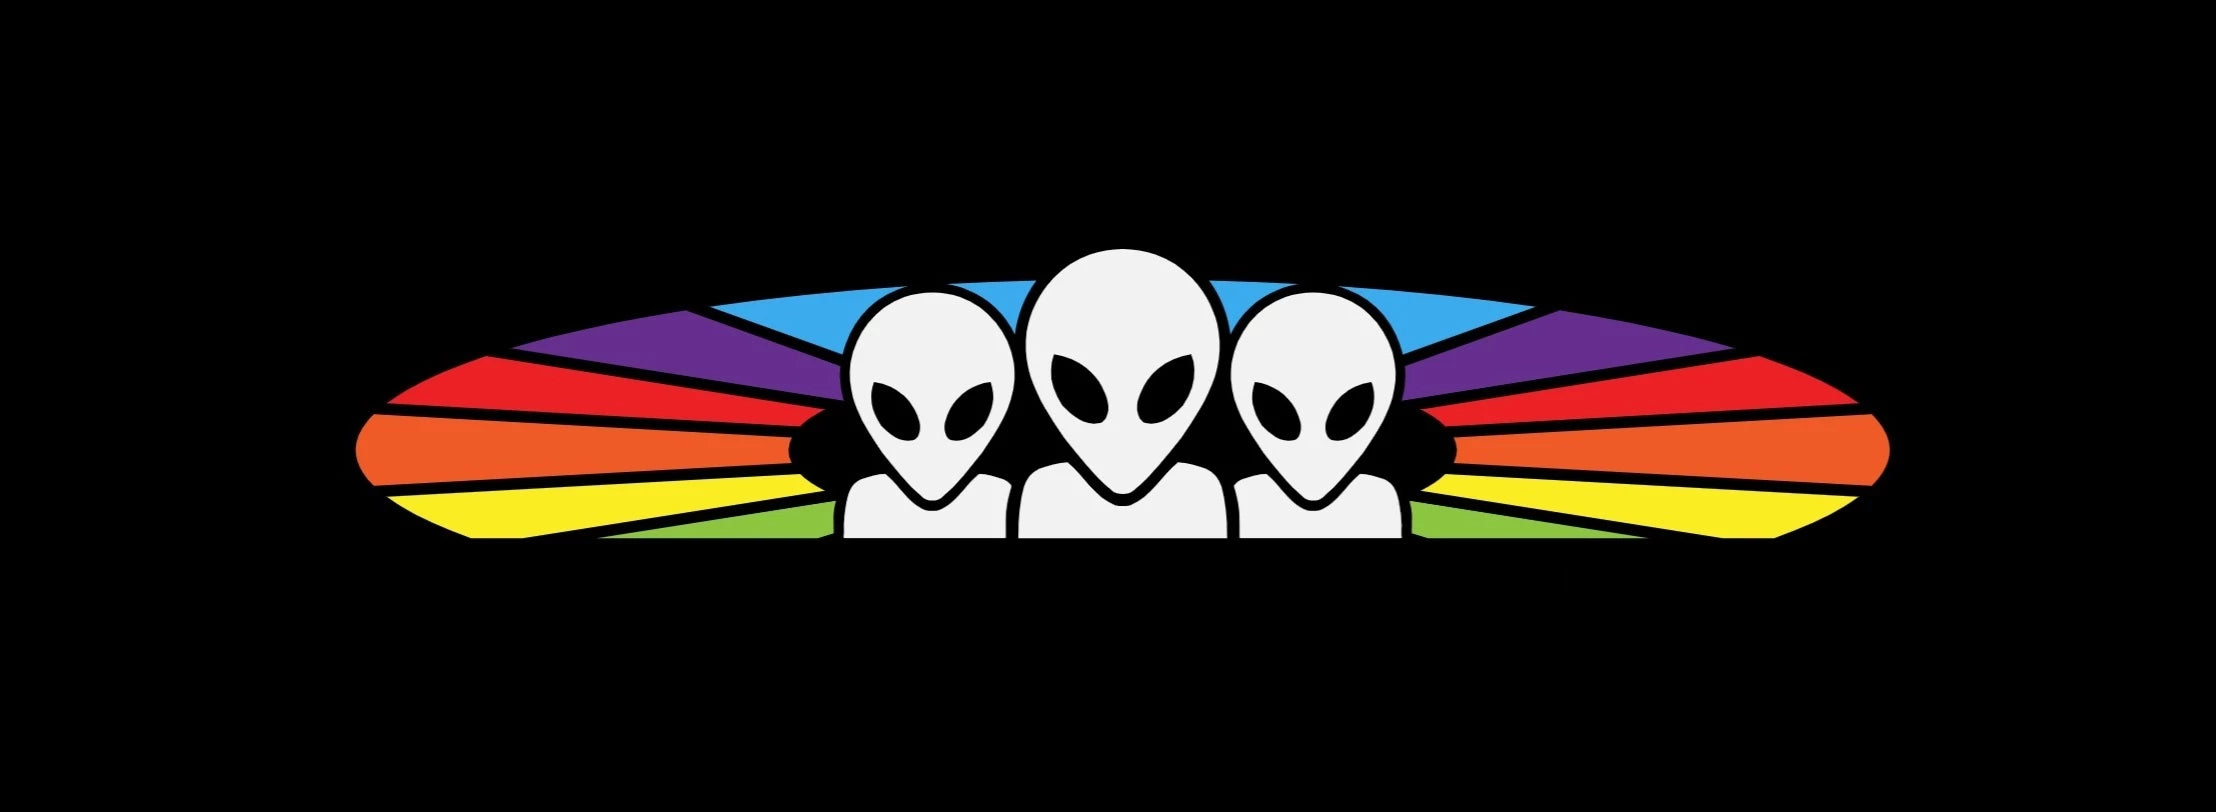 Alien Workshop Skateboards and Apparel